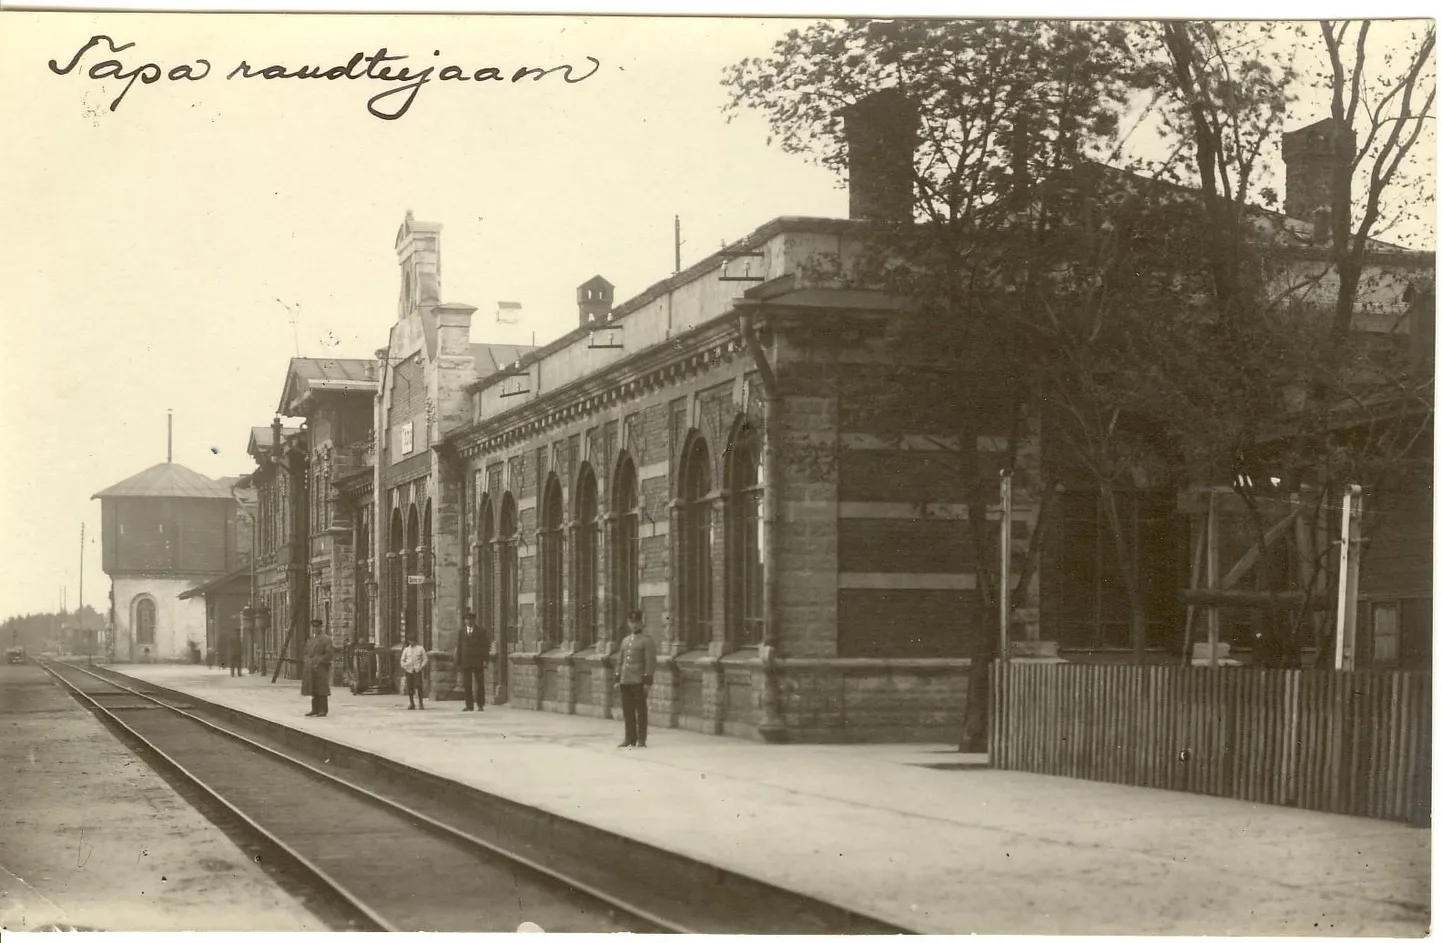 Tapa raudteejaam 1930. aasta paiku.